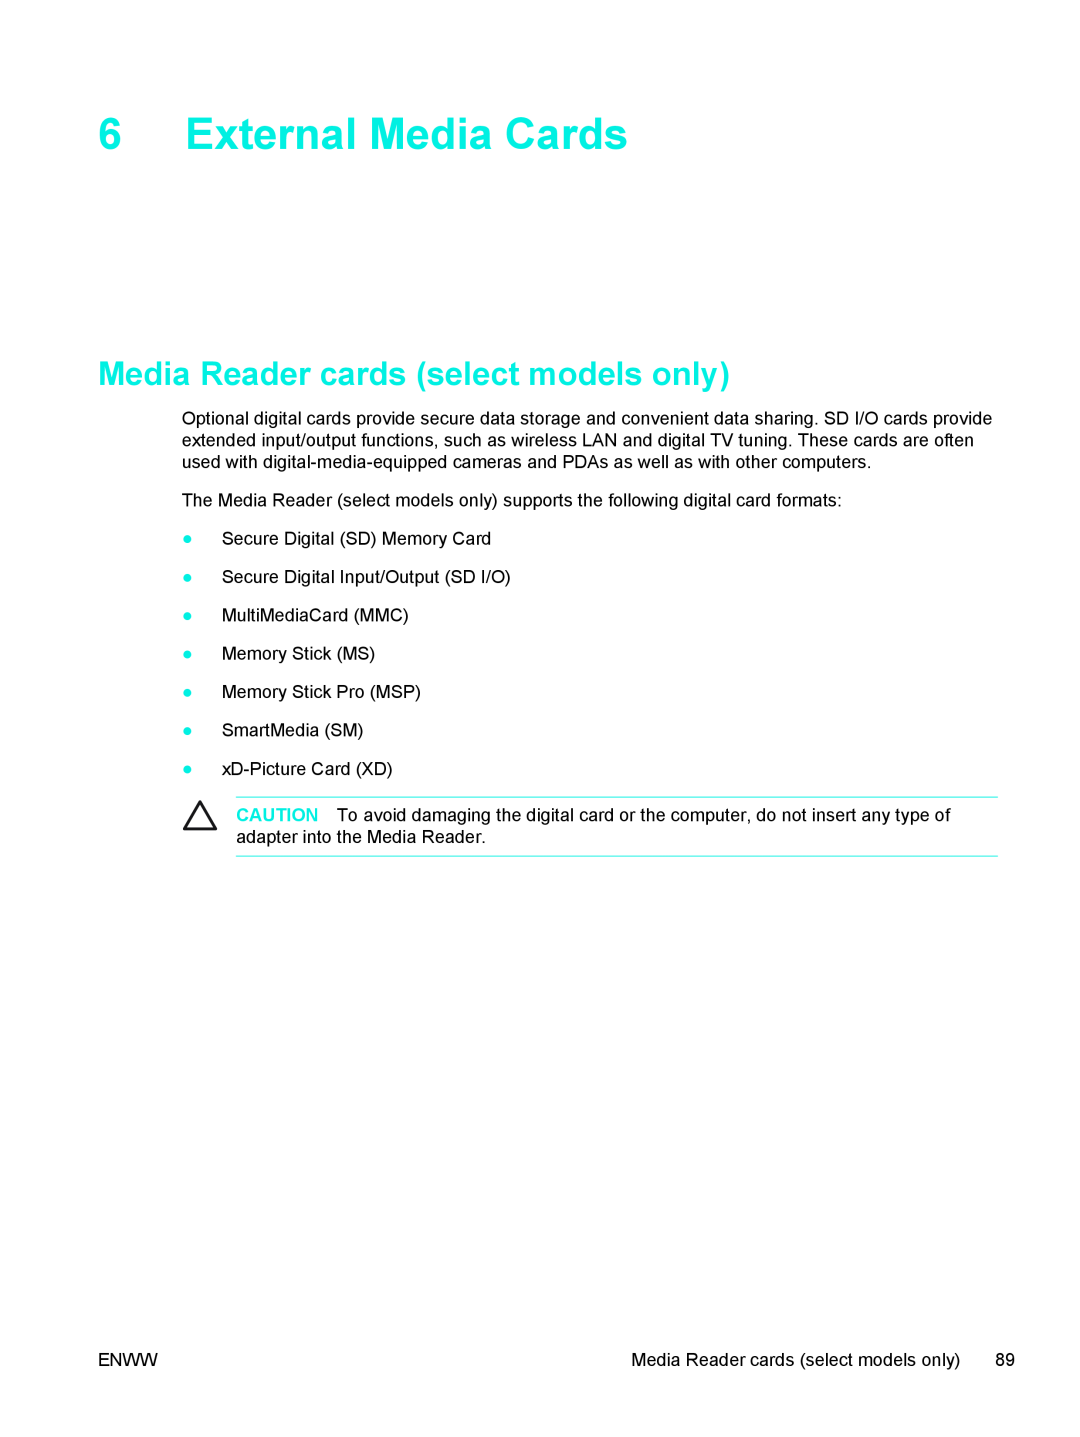 HP V5215LA, V5224TU, V5221TU, V5221EA, V5219TU, V5218TU, V5215TU External Media Cards, Media Reader cards select models only 